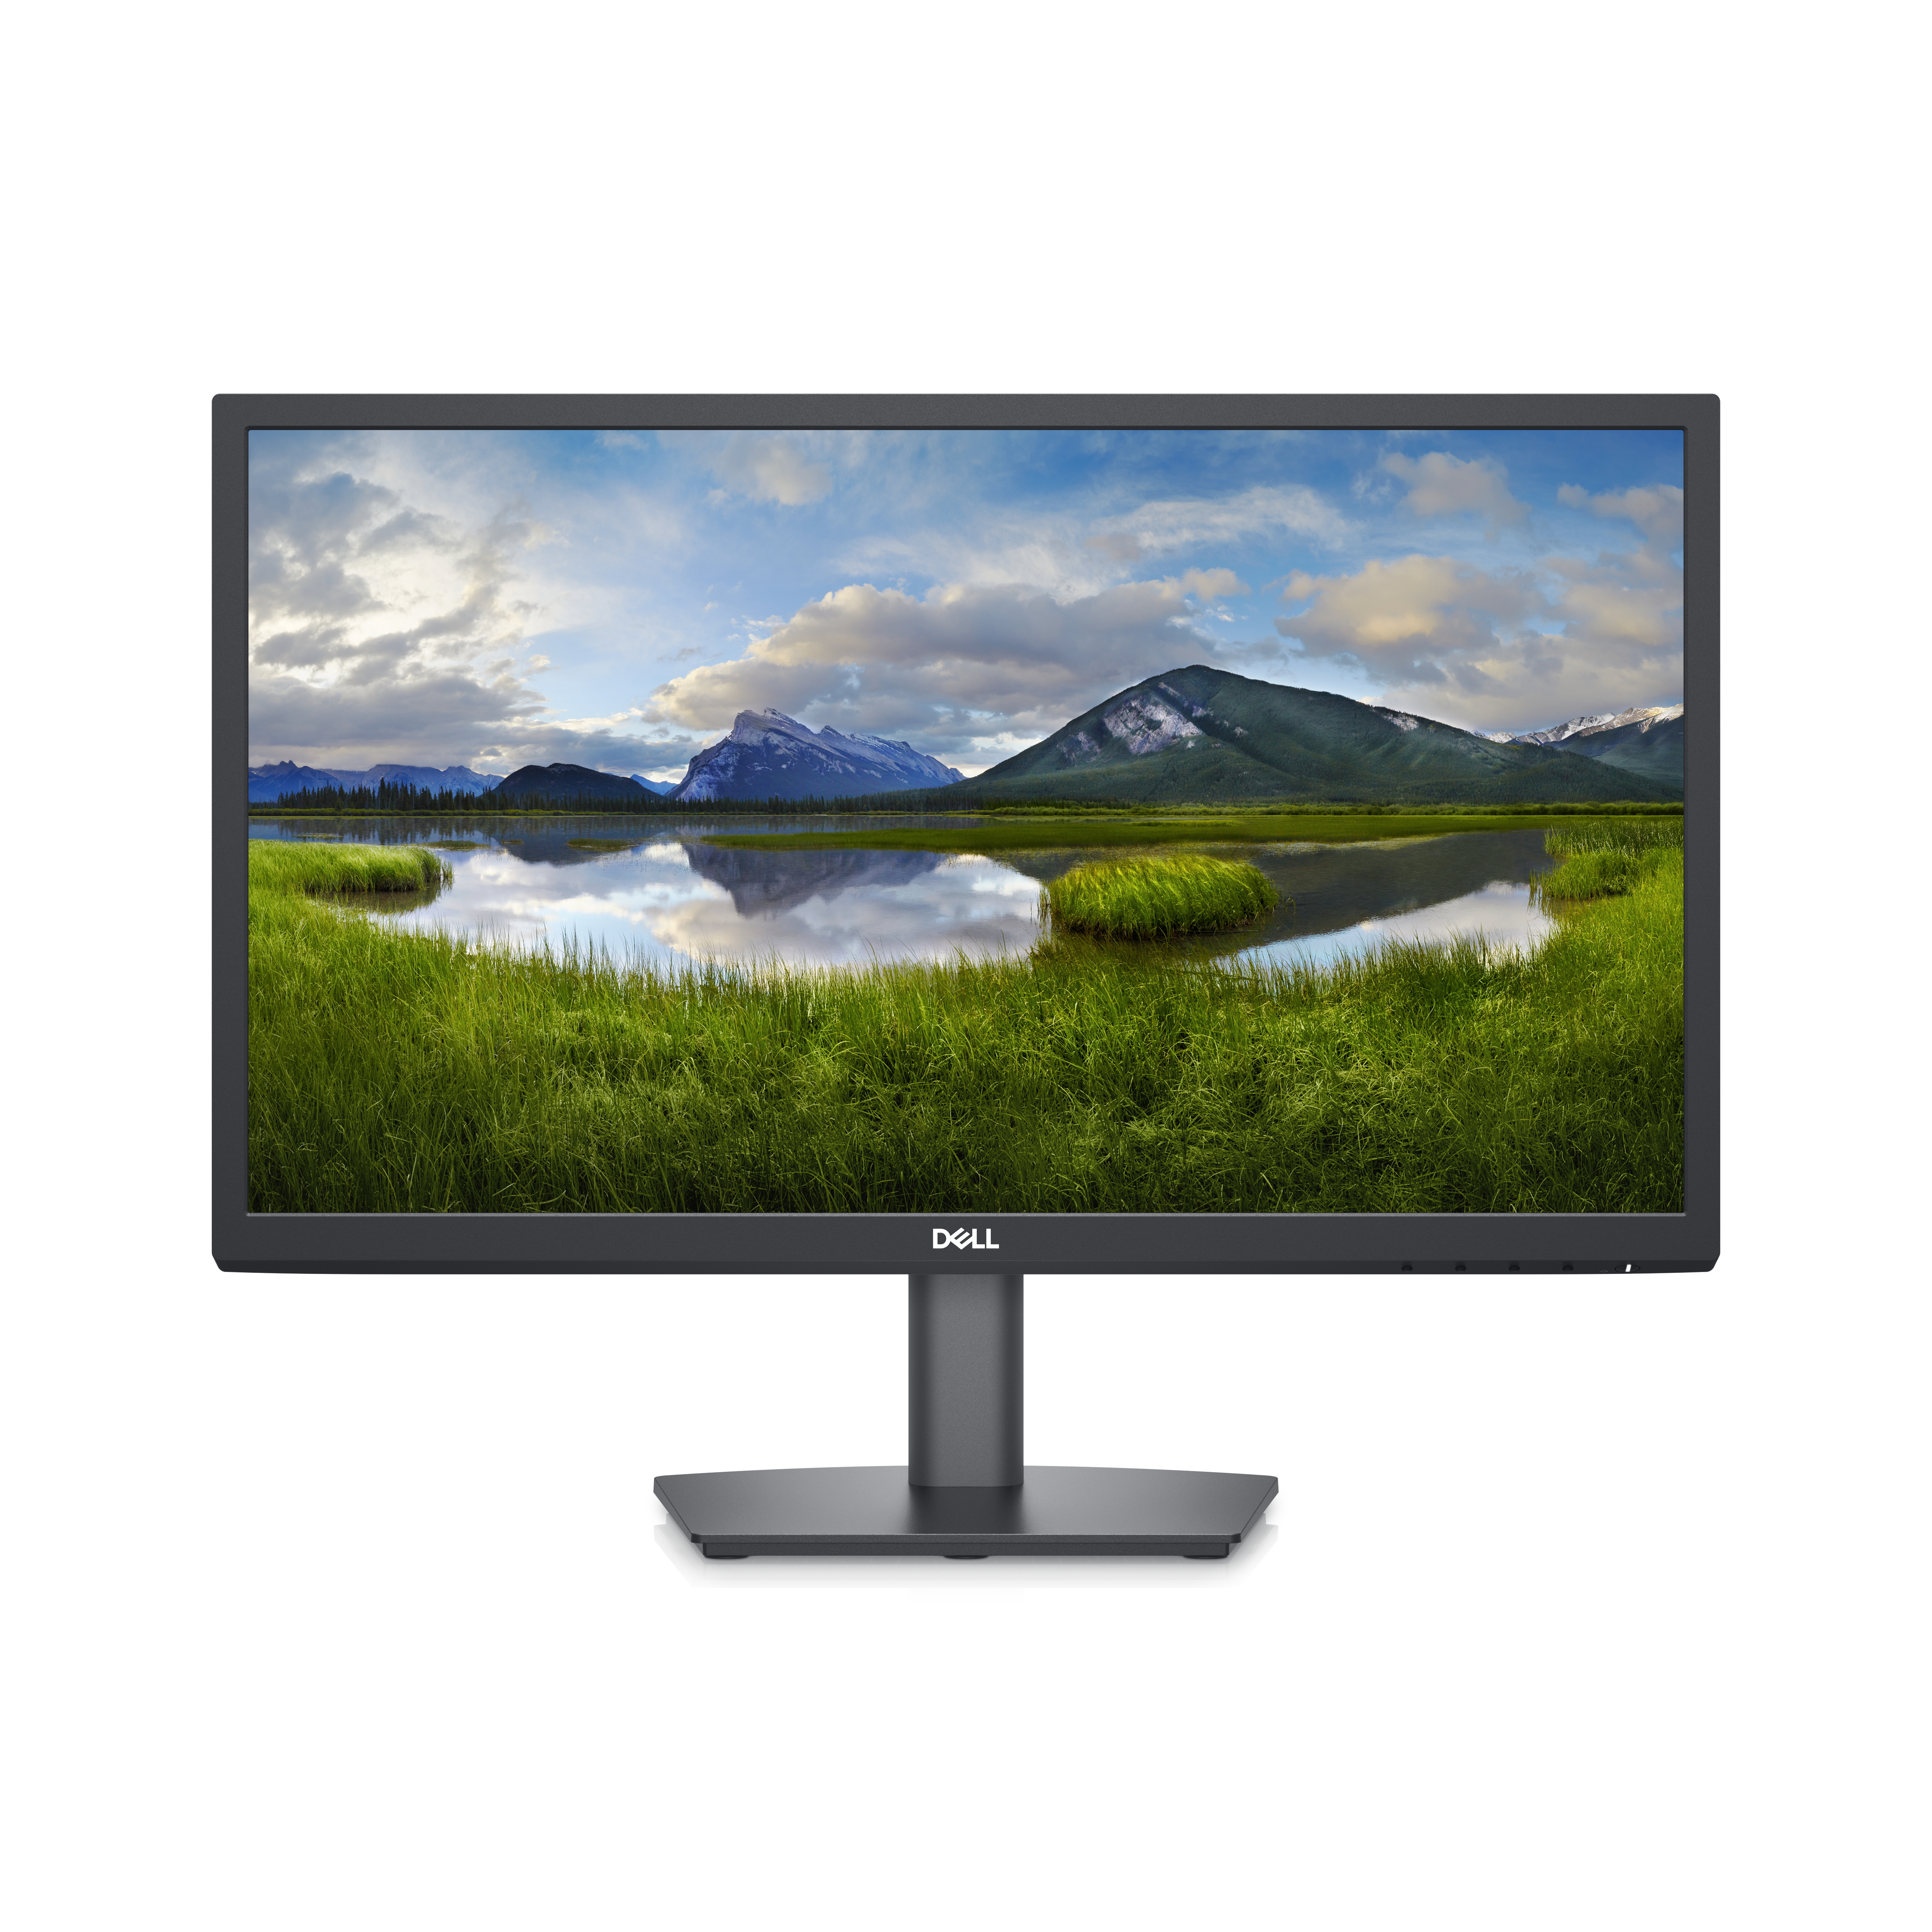 Image of DELL E Series E2223HV 54,5 cm (21.4) 1920 x 1080 Pixel Full HD LCD Nero